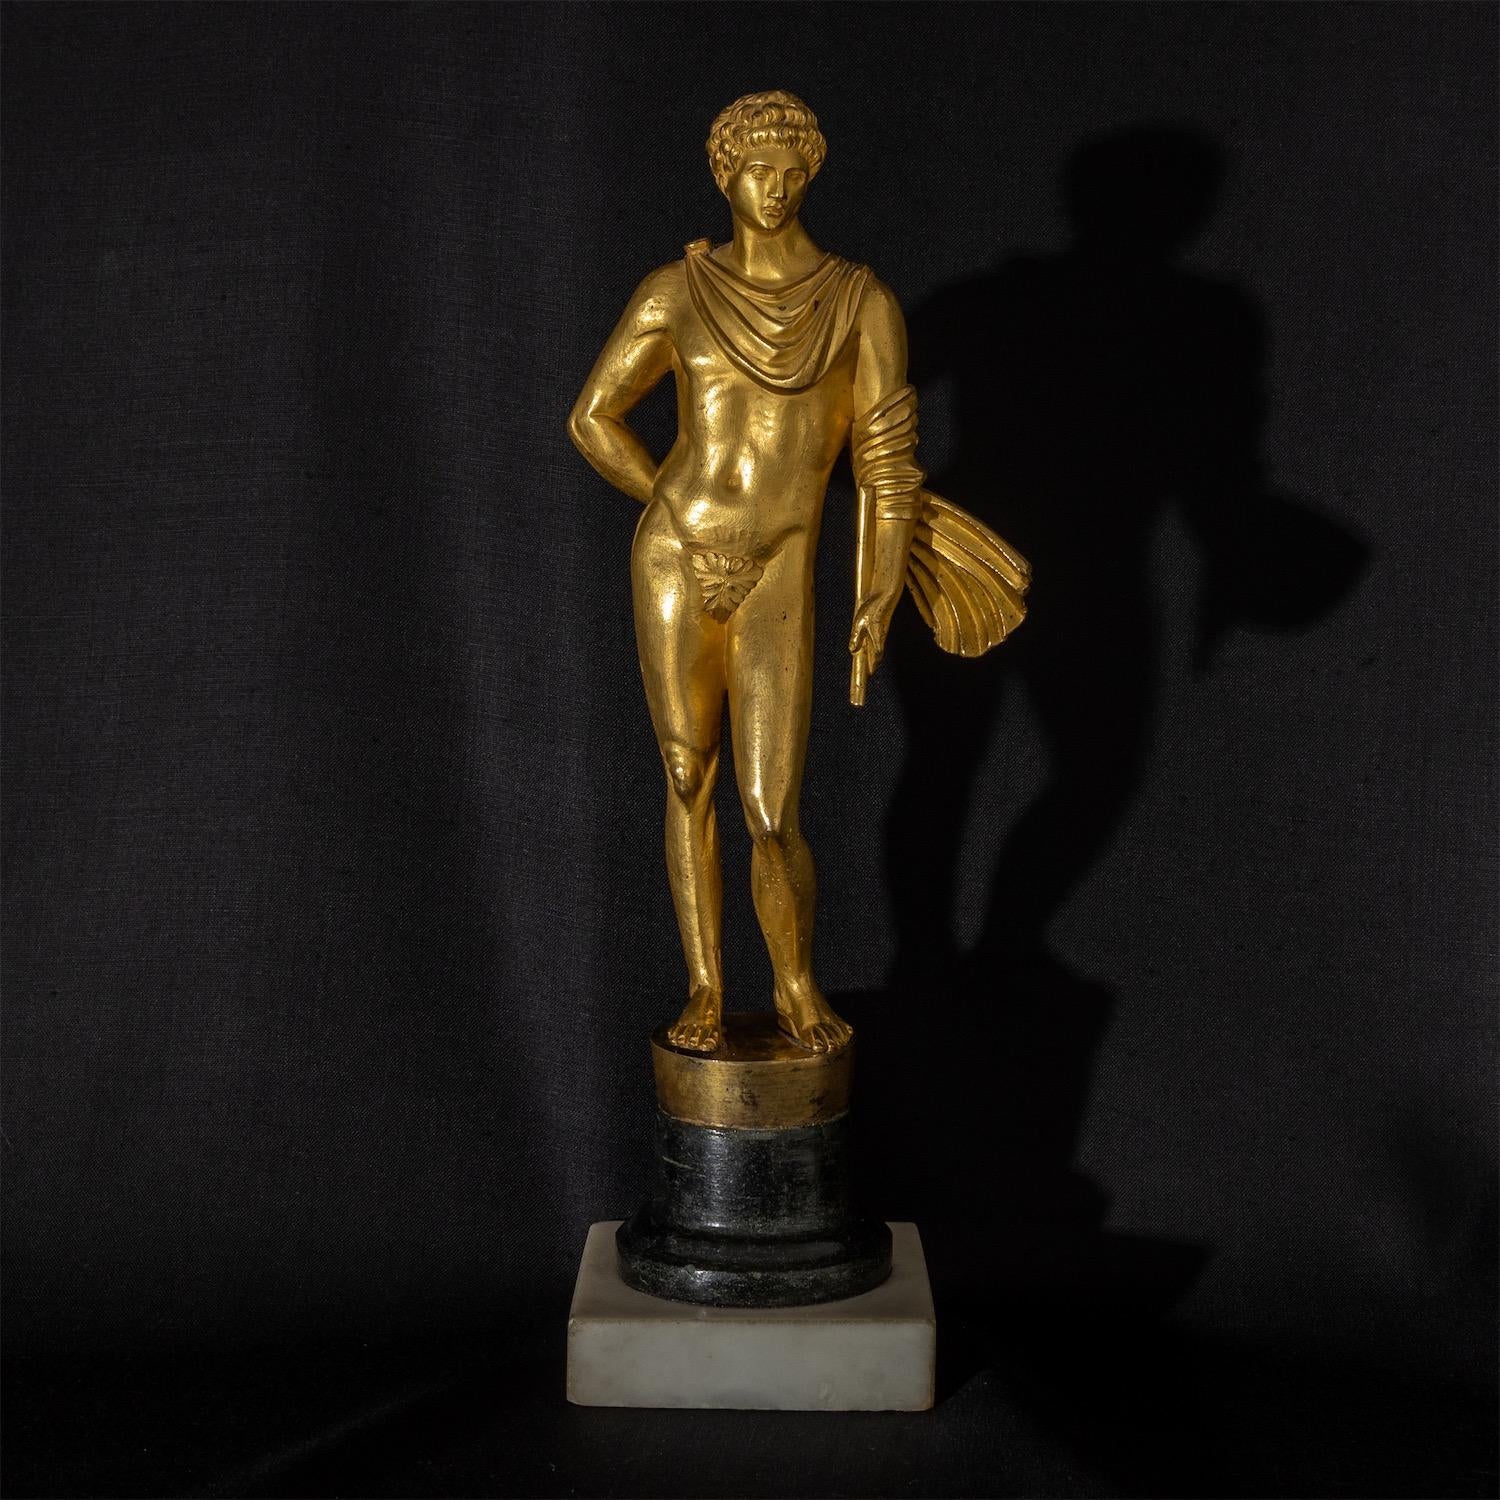 Vergoldete Bronze des ätholischen Helden Meleager/Meleagros auf einem quadratischen Marmorsockel mit schwarzem, rundem Steinsockel. Der Mantel, stark vom Wind bewegt, schlingt sich um seinen Arm, in dessen Hand er noch immer eine im Kampf gebrochene